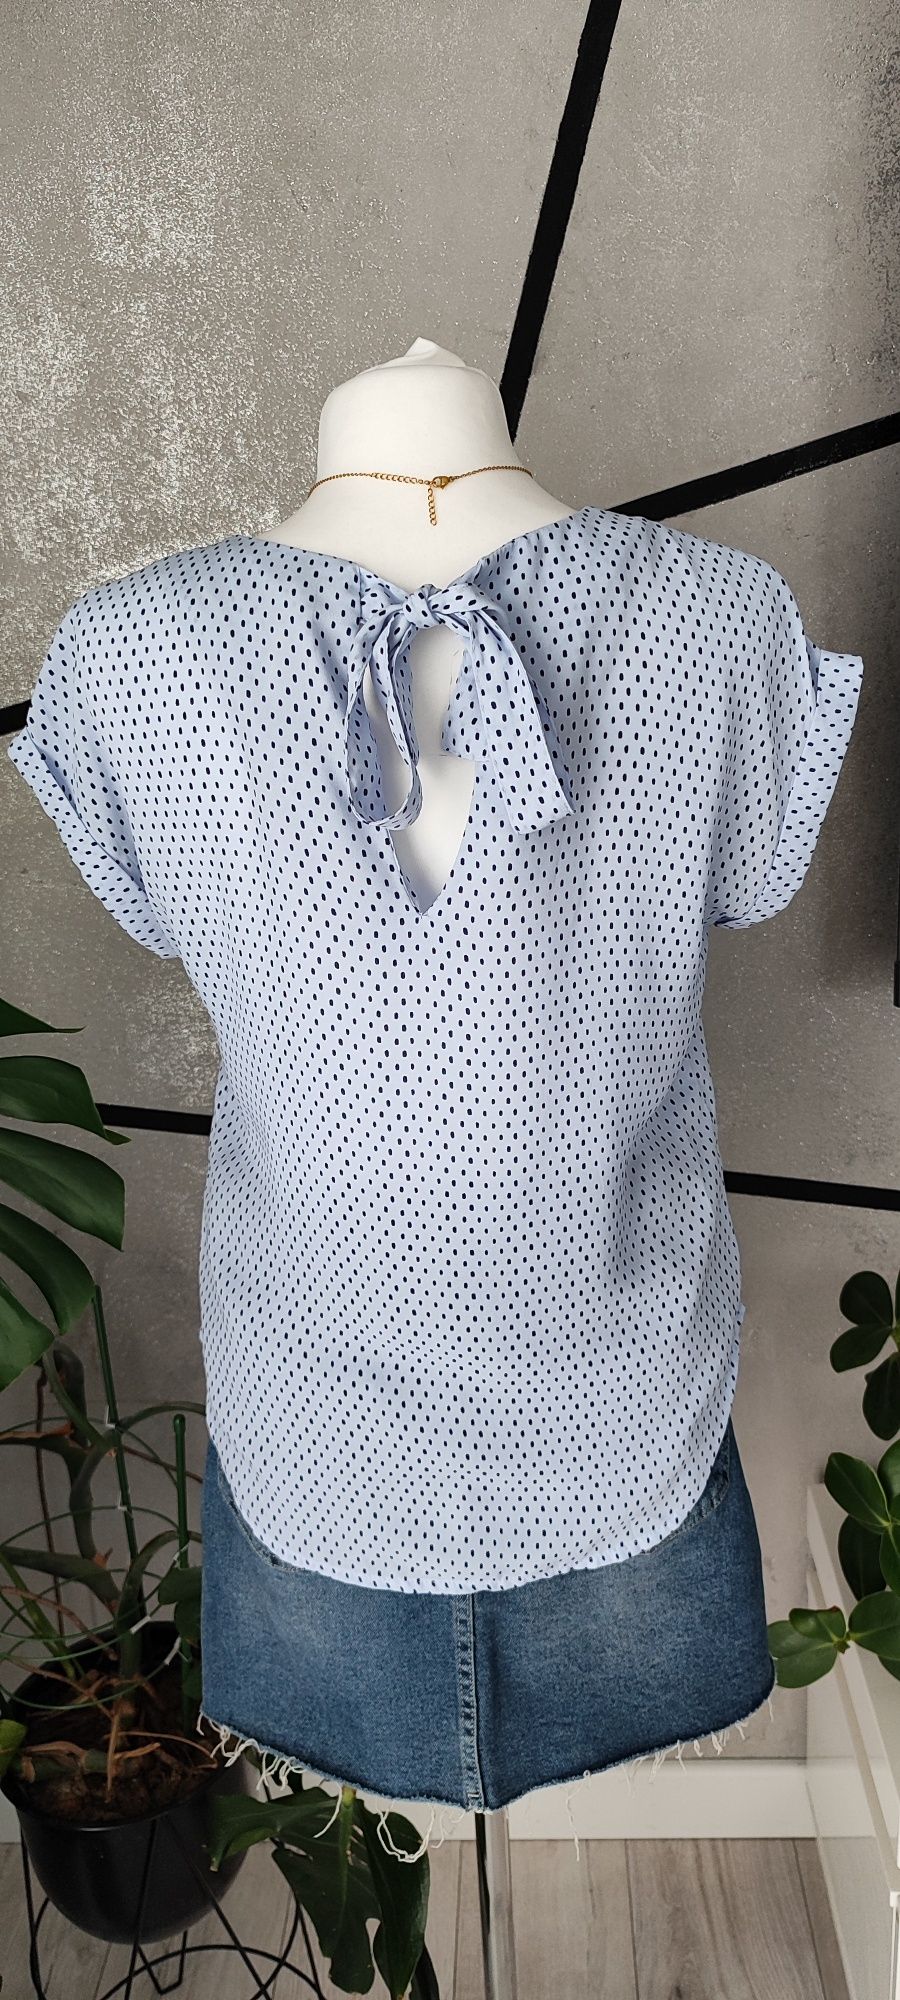 Przewiewna bluzka damska print w kropki kokarda Reserved. Roz. 34/XS